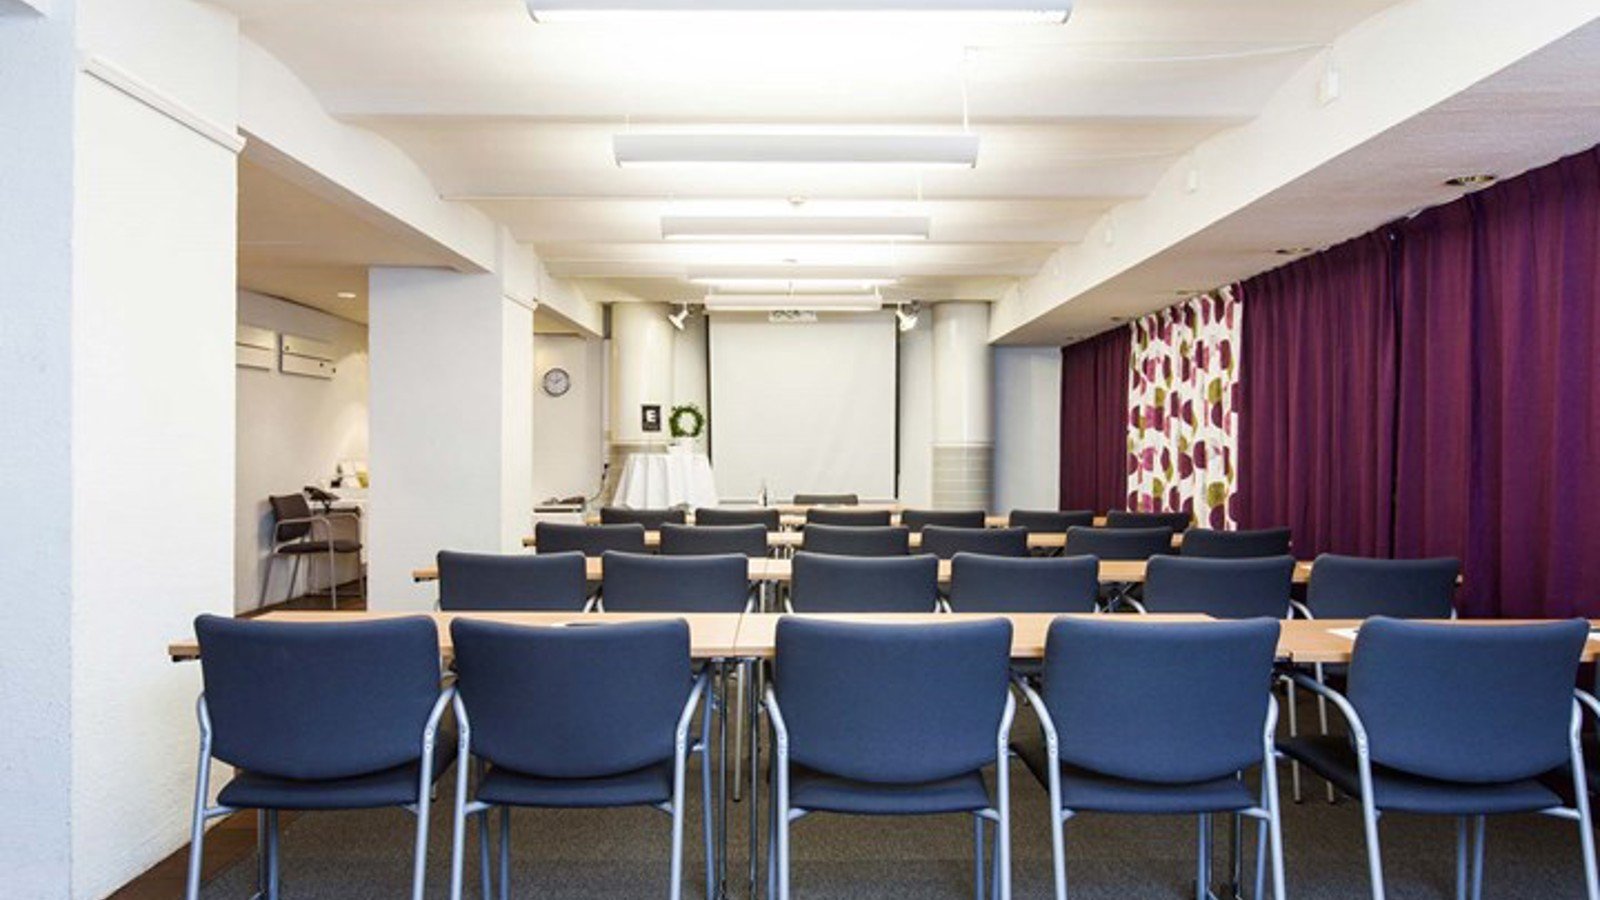 Konferensrum med skolsittning, blå stolar och lila draperi